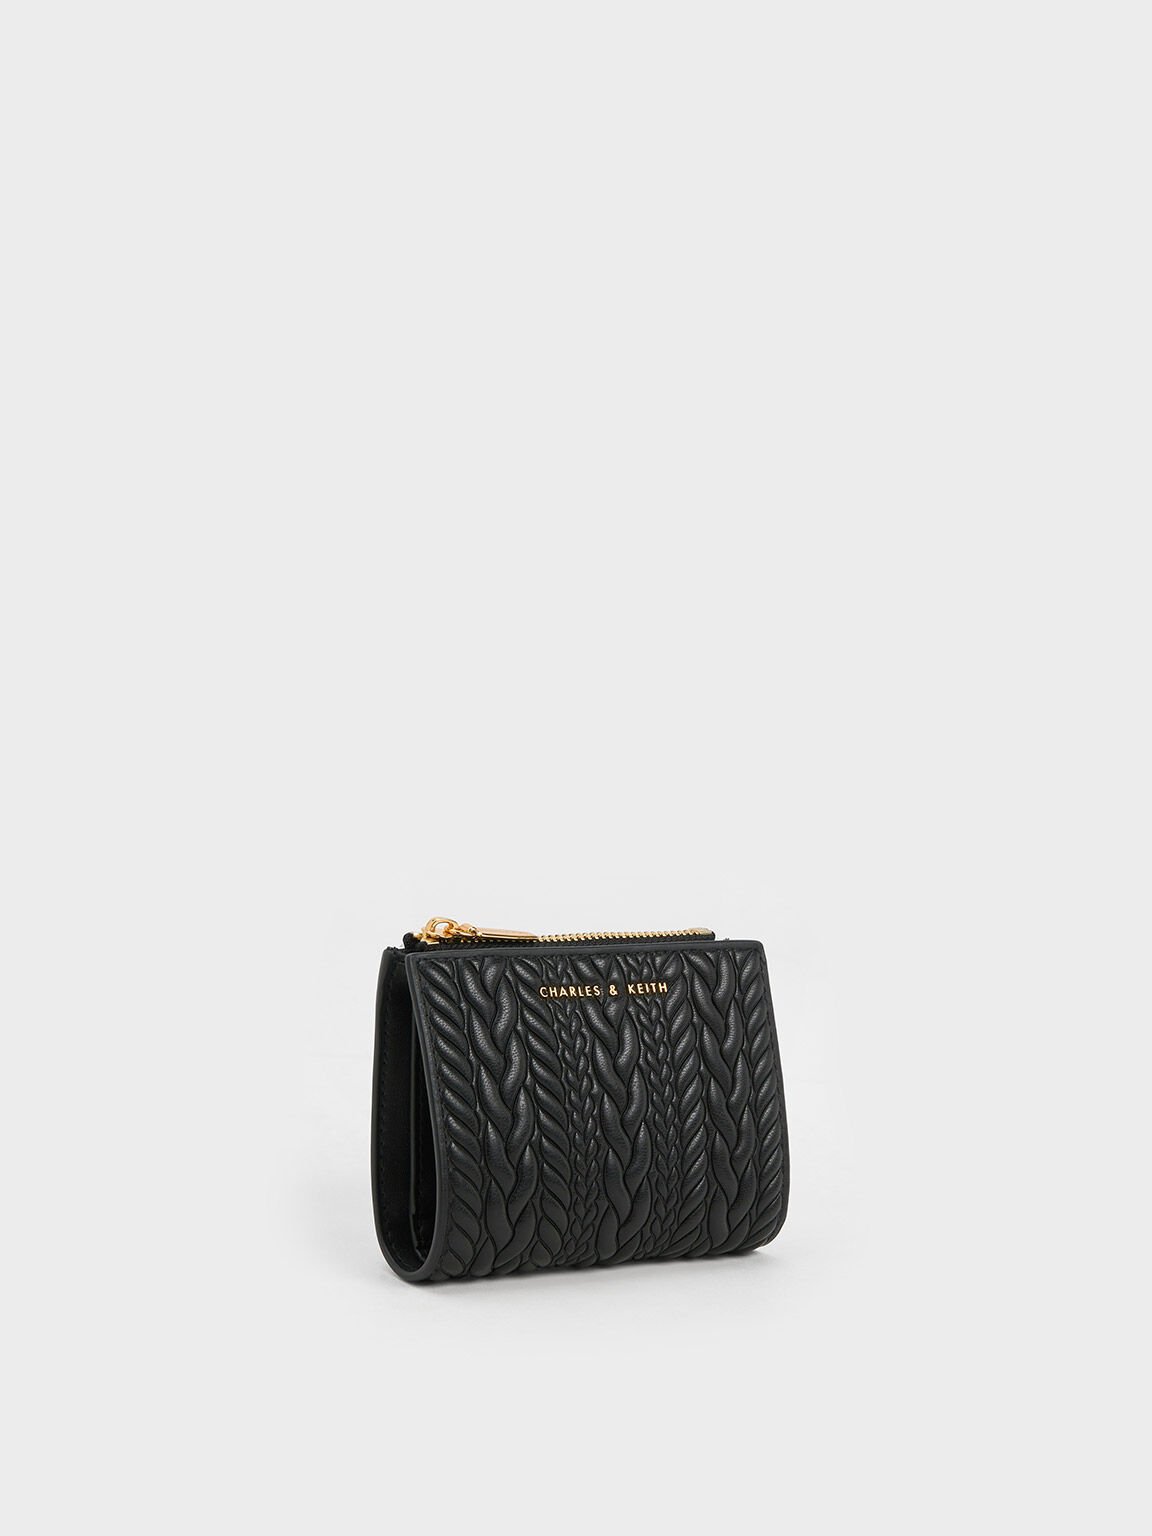 Louis Vuitton Panama Sandal, Black, 12